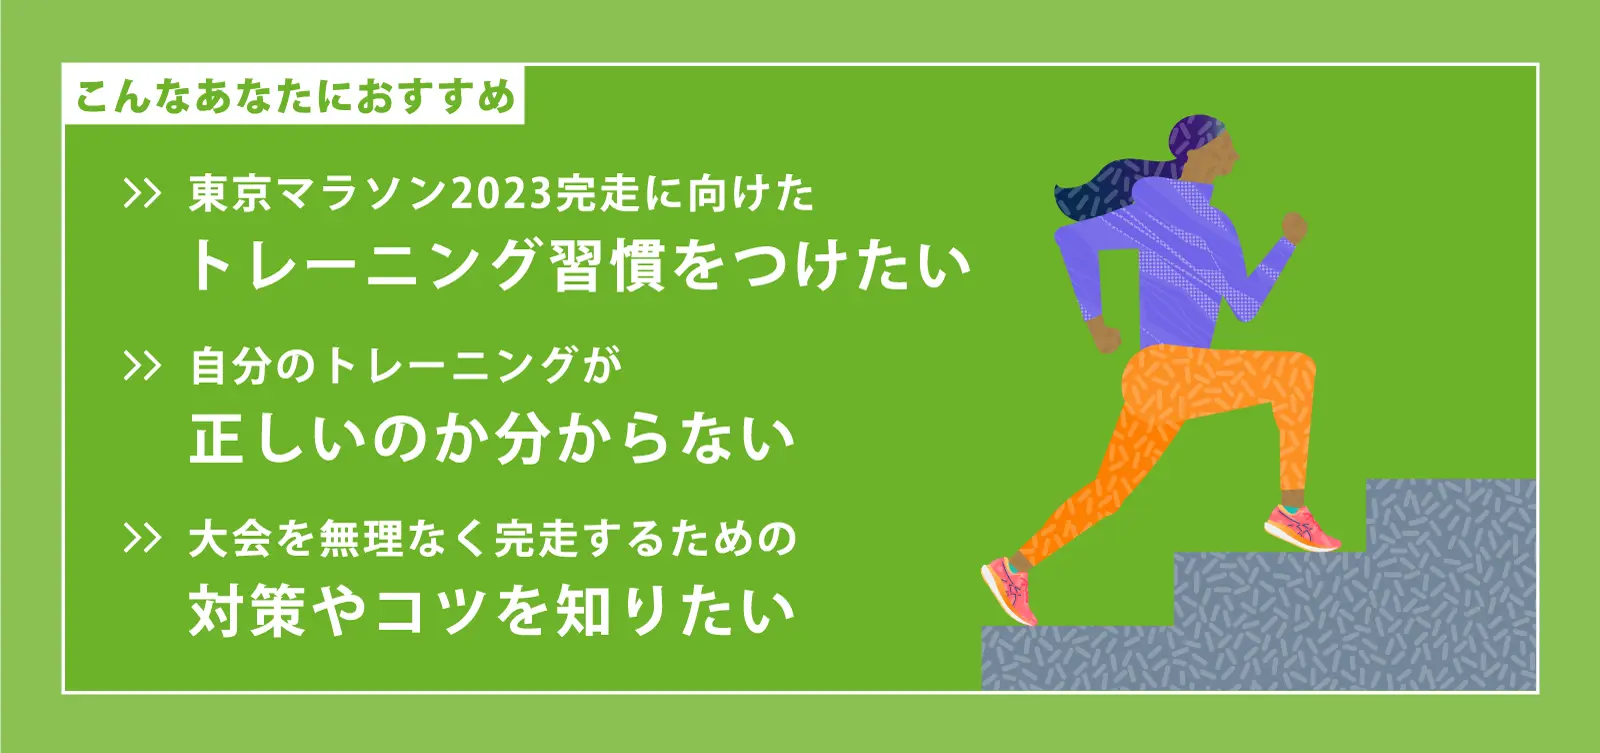 ASICS Running Program Road to 東京マラソン2023｜アシックス公式